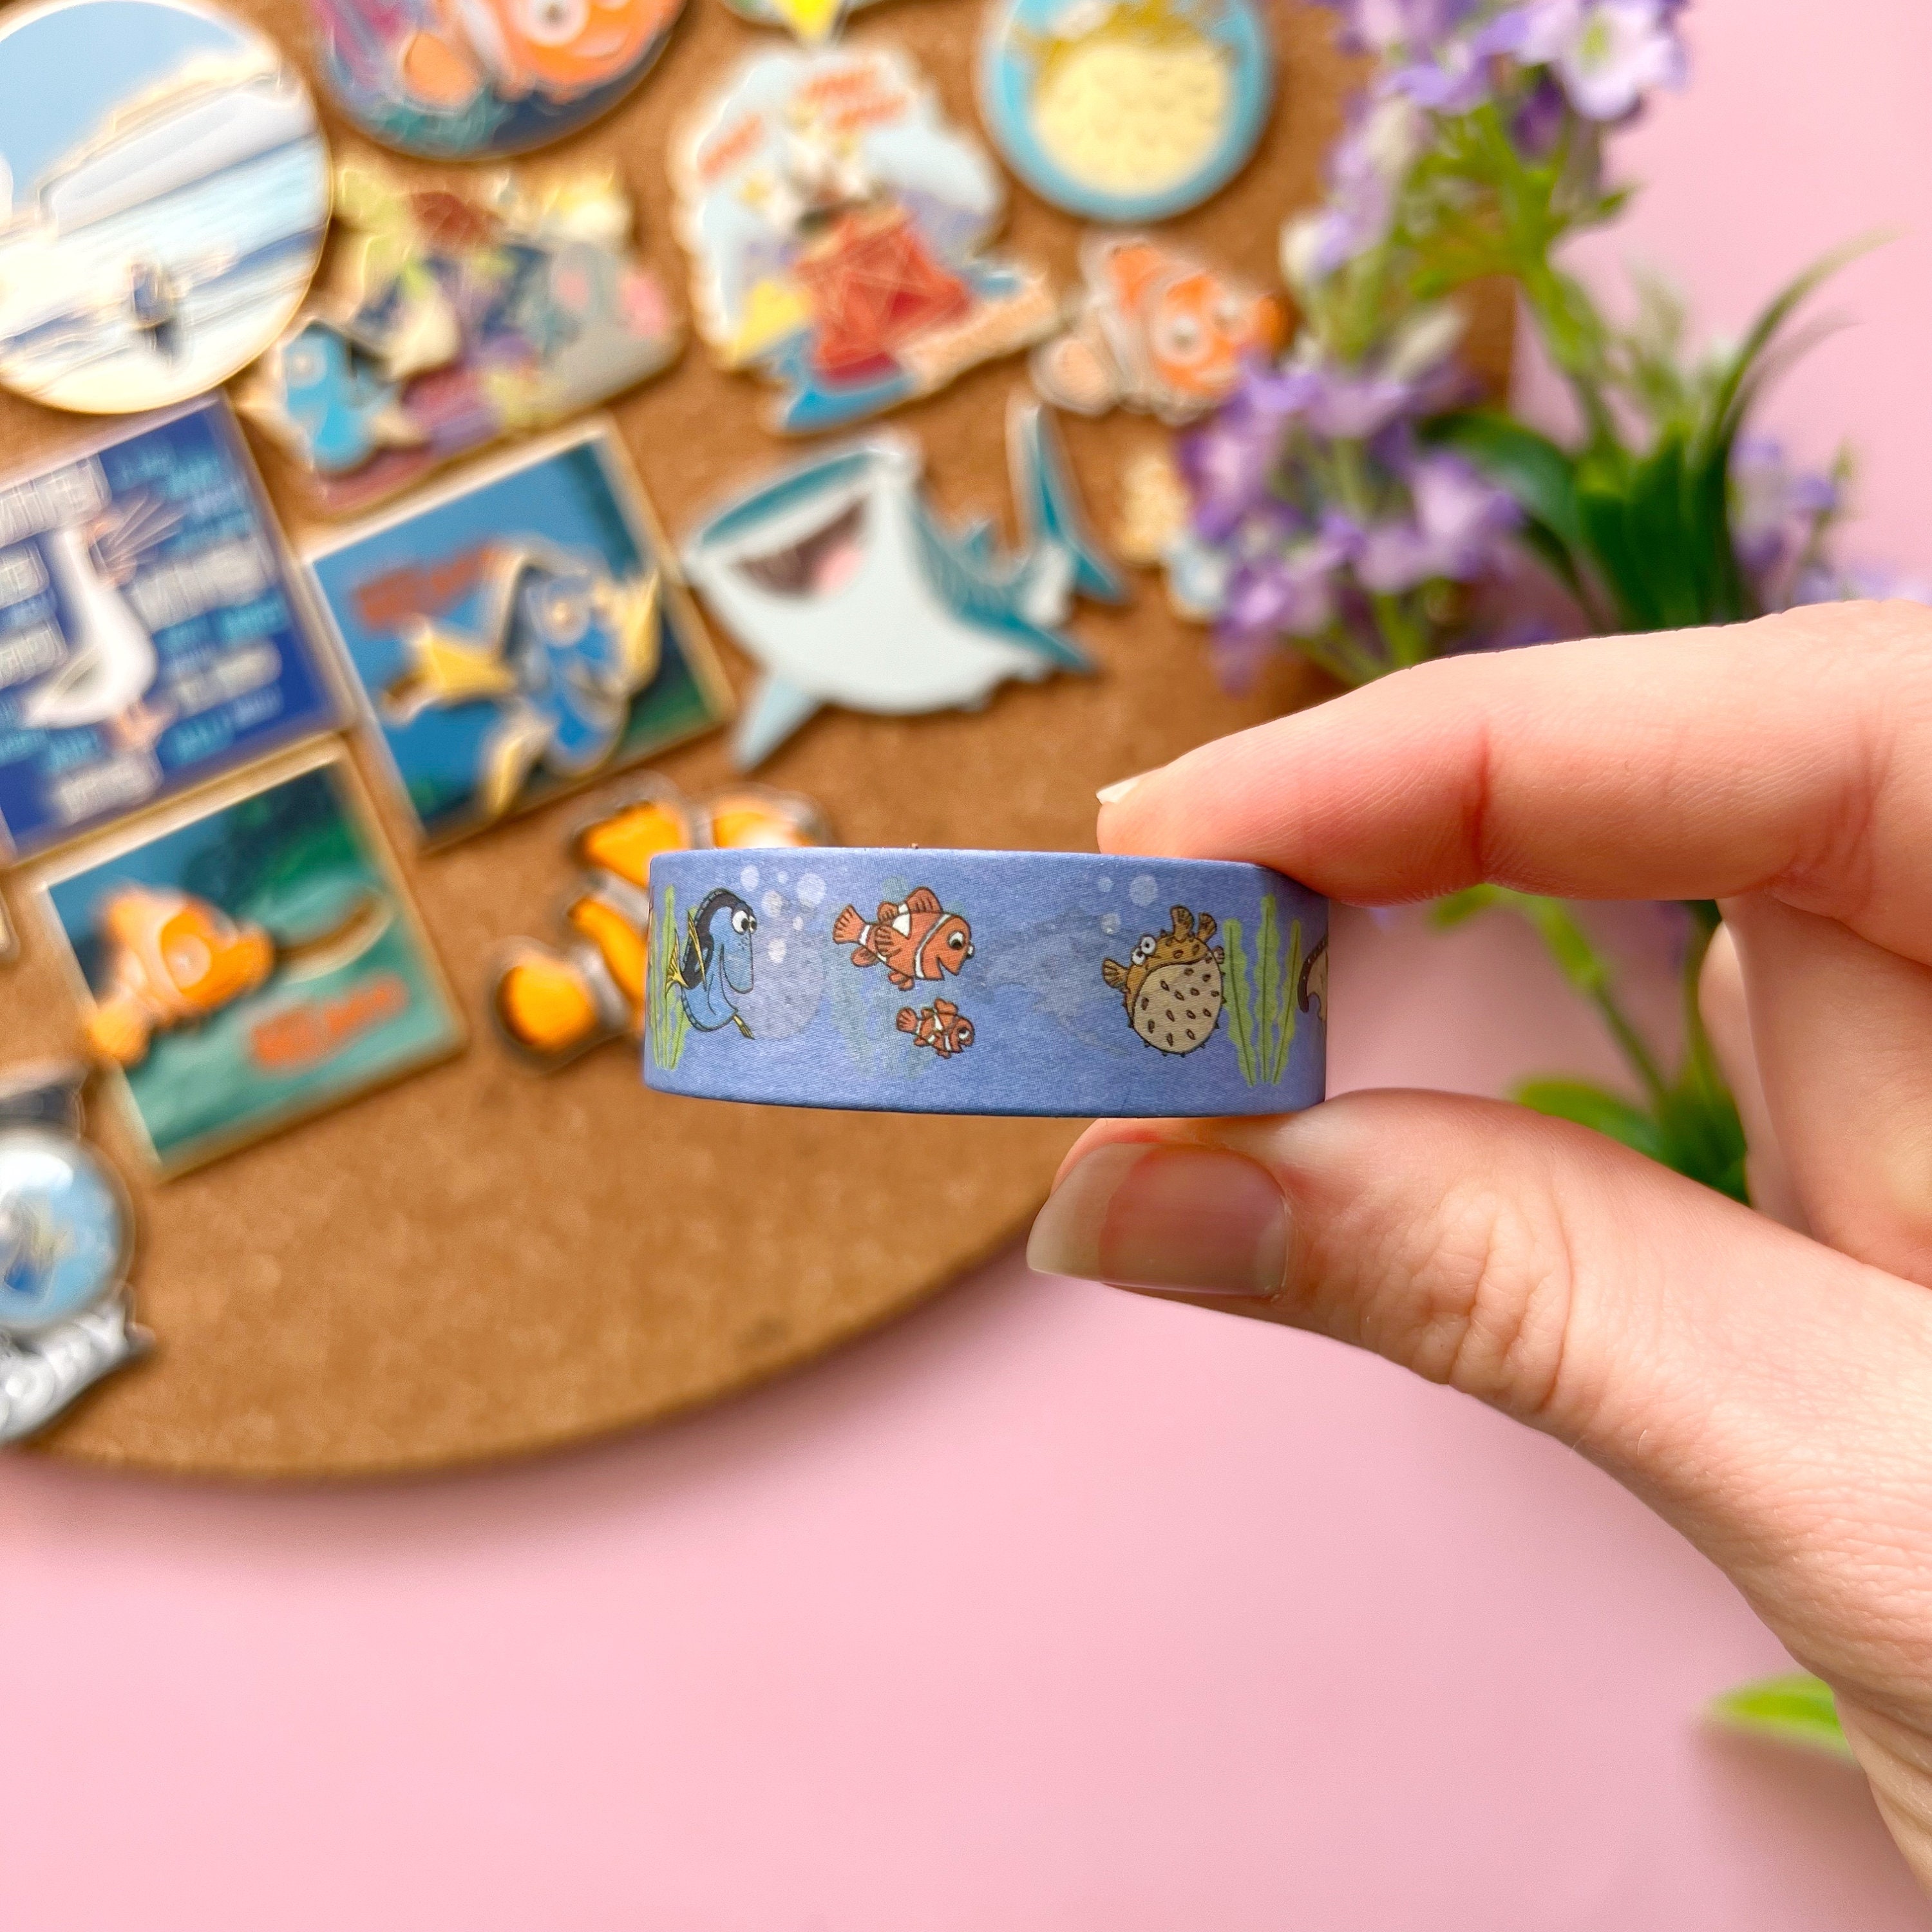 Disney Pixar Masking/washi Tape Washi Tape Full Roll Journals Planners  Scrapbooking Card Making 